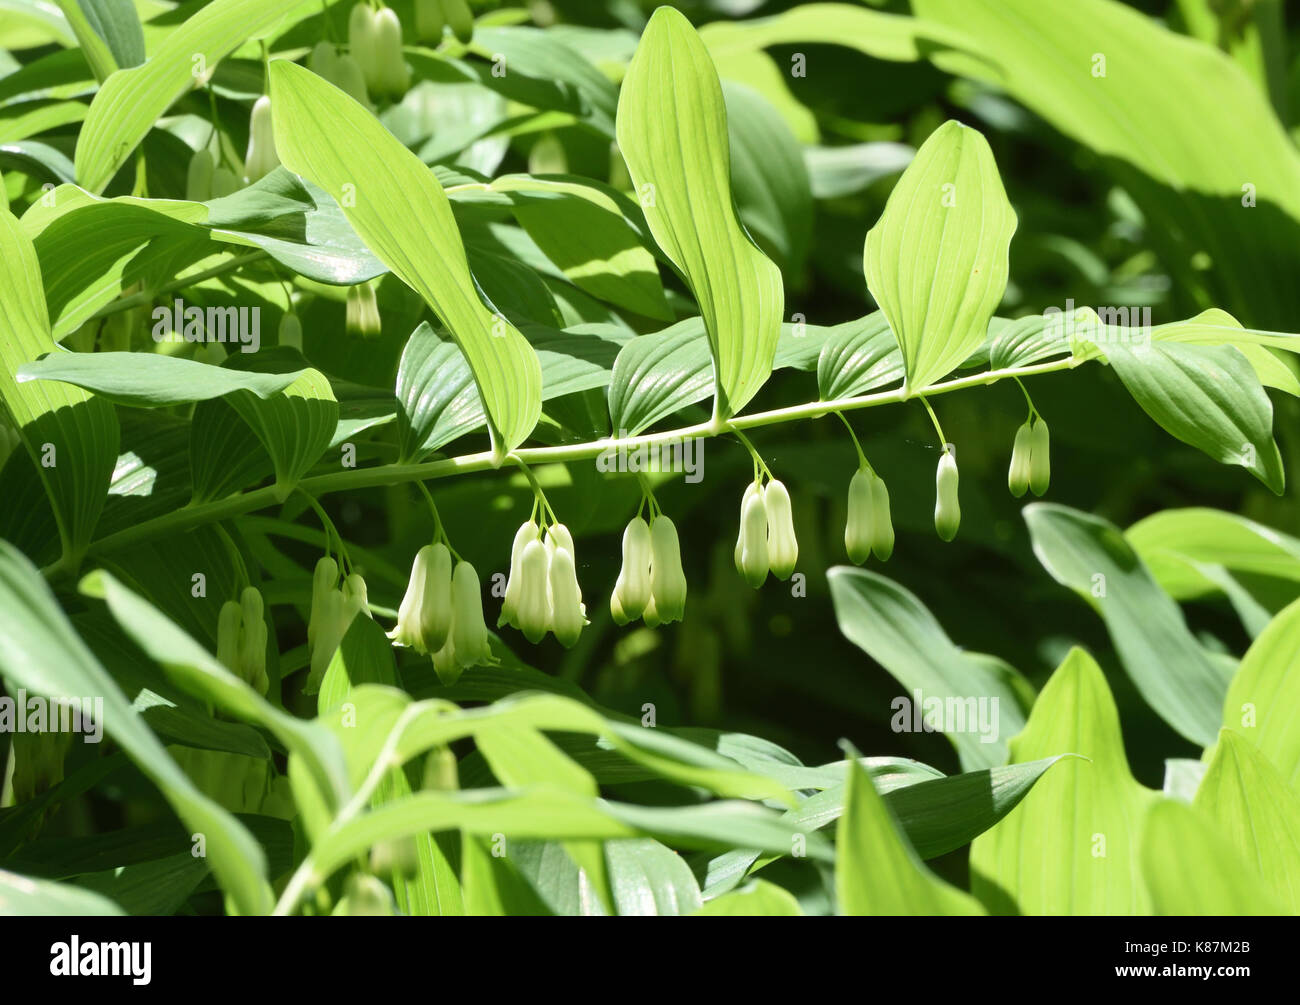 Verde e bianco fiori penduli fiori della pianta di giardino Polygonatum (Polygonatum × hybridum) noto anche come il re Salomone del sigillo di Salomone o del sigillo Foto Stock